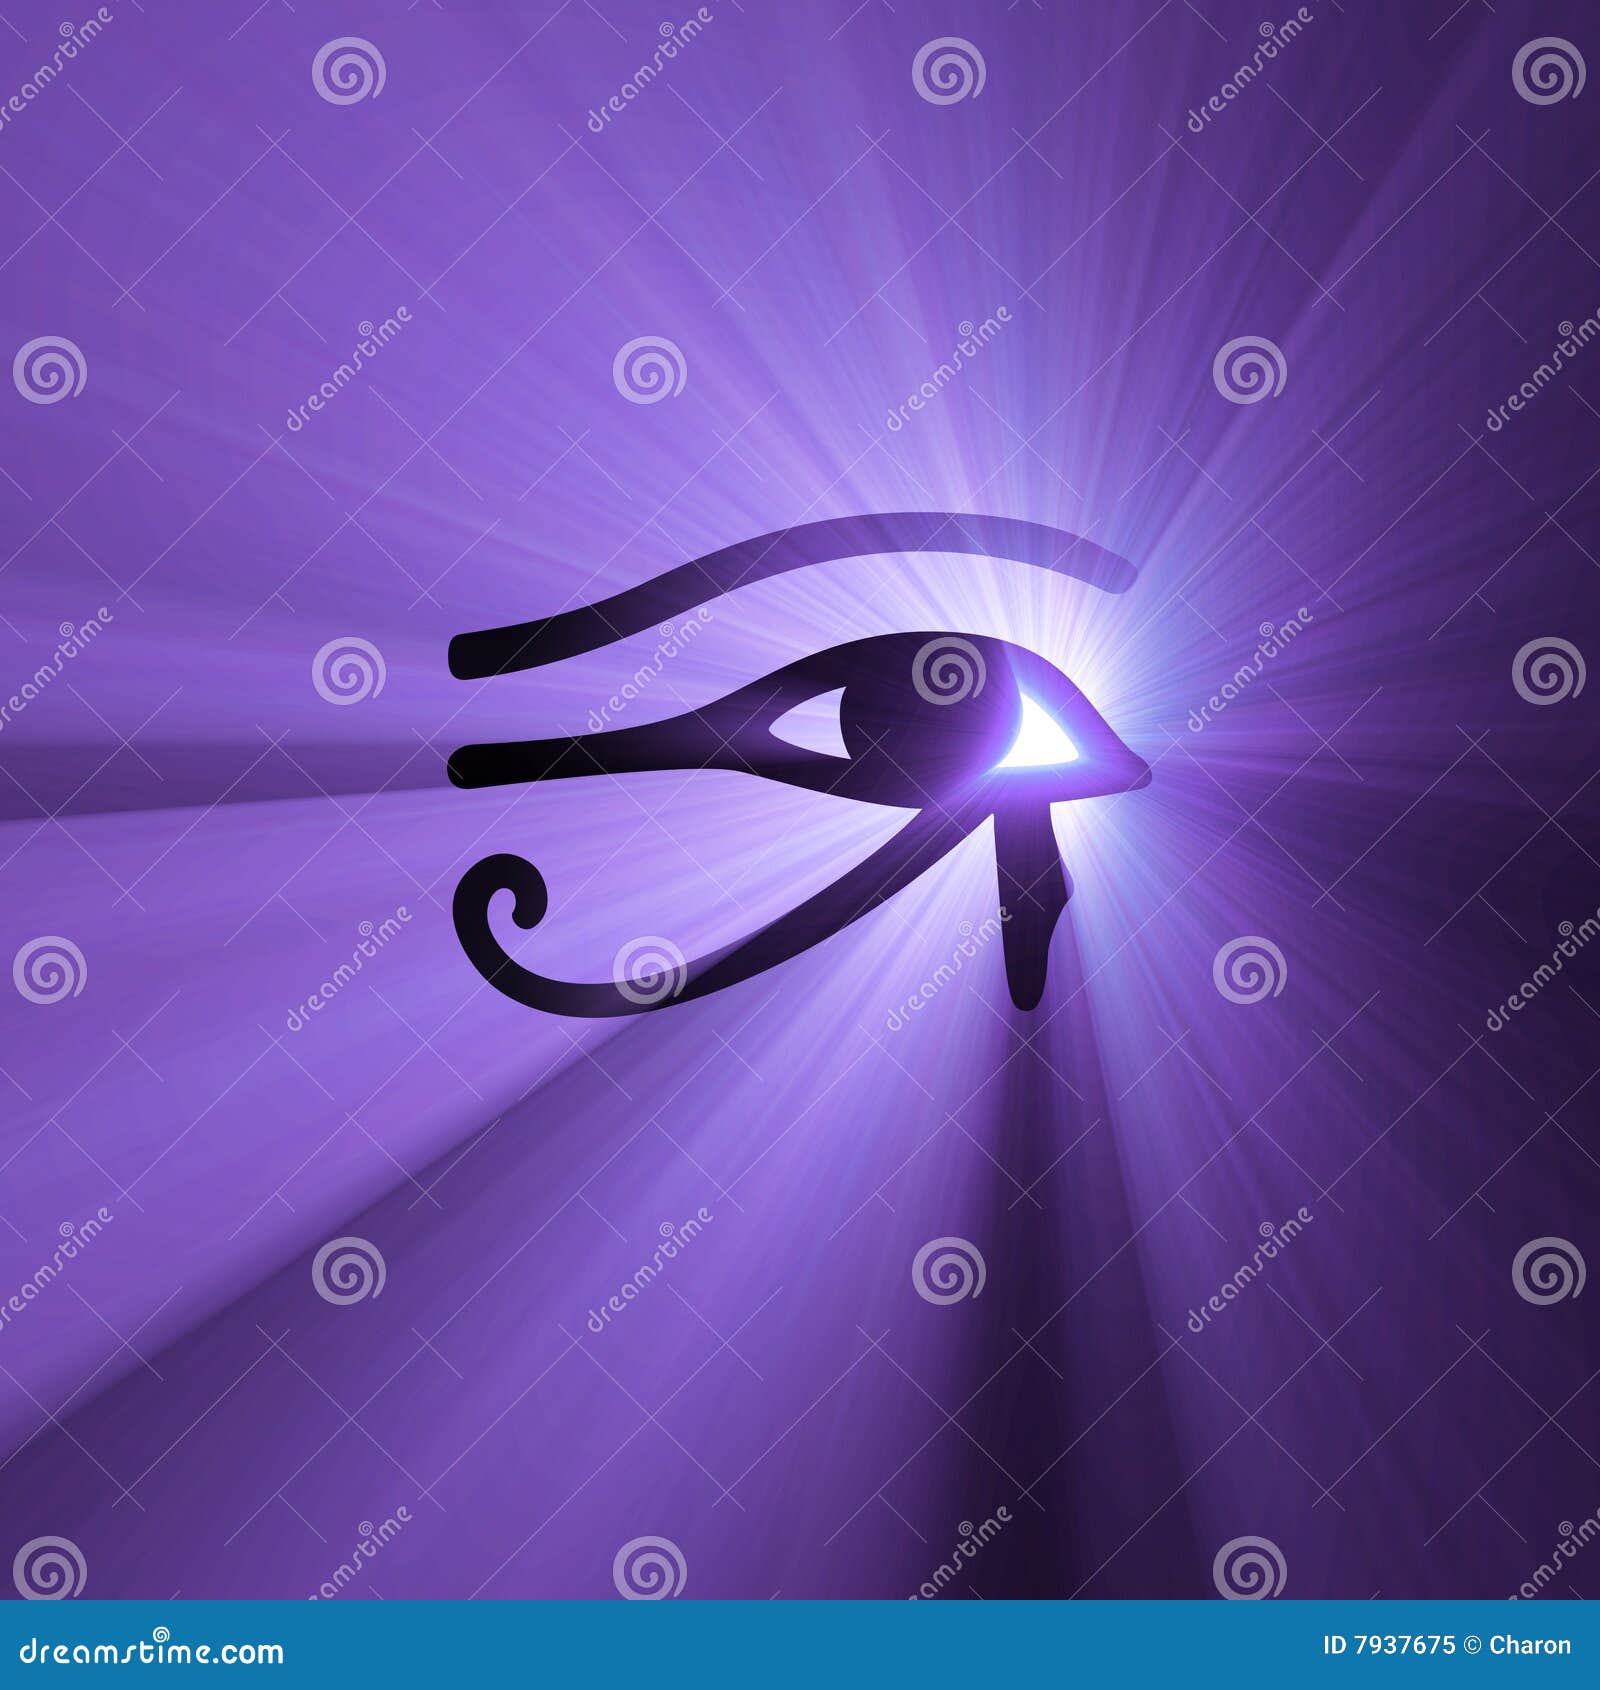 eye of horus egyptian  light flare